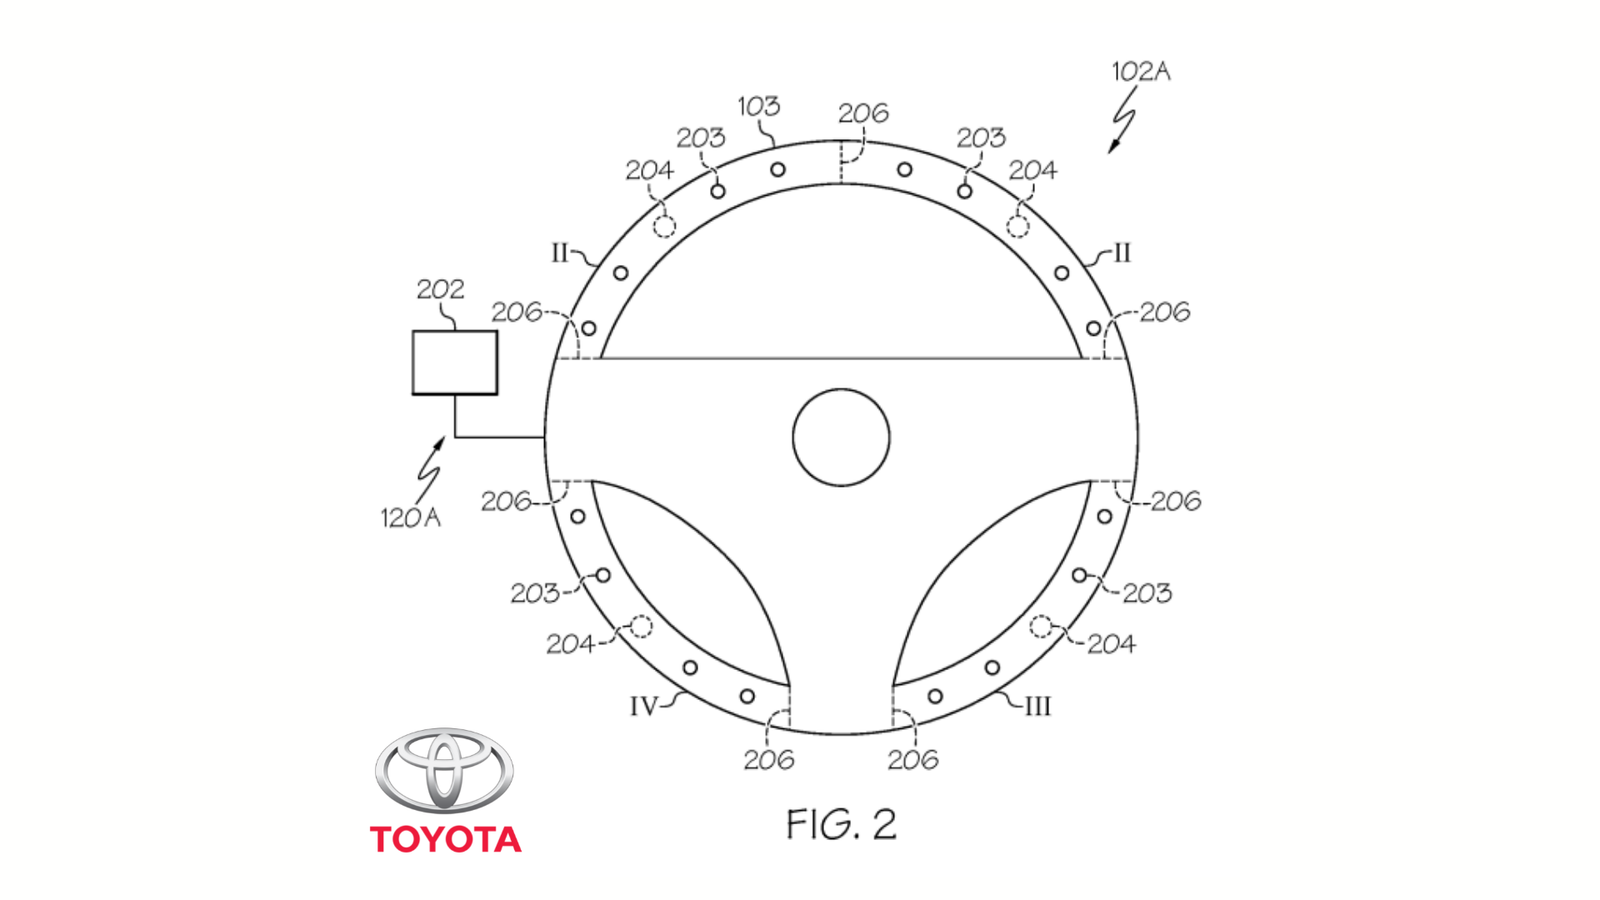 Patente - Toyota - Apex IP - Blog